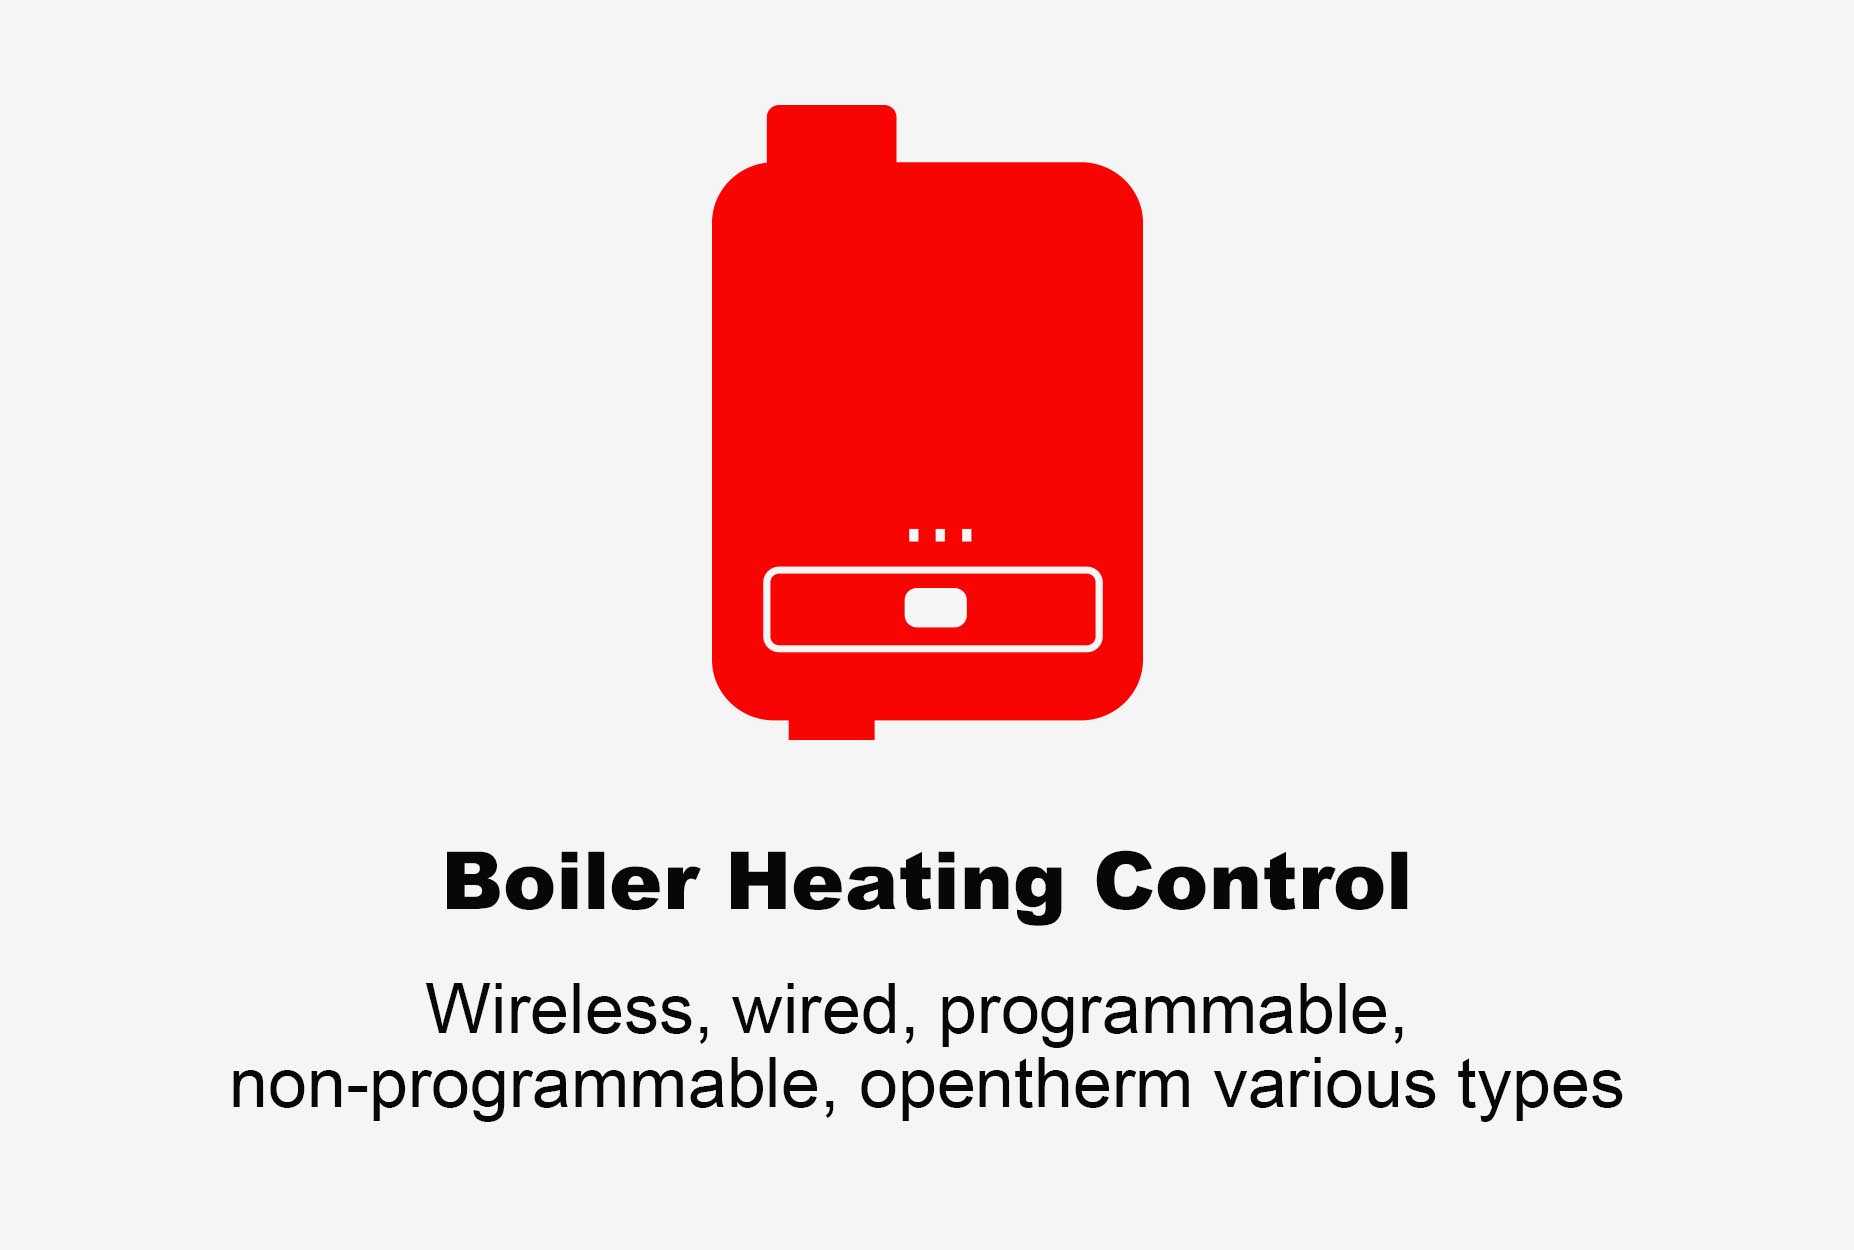 проводной термостат, беспроводной термостат, термостат для котла с Wi-Fi, программируемый термостат, термостат с питанием от батареи, термостат opentherm